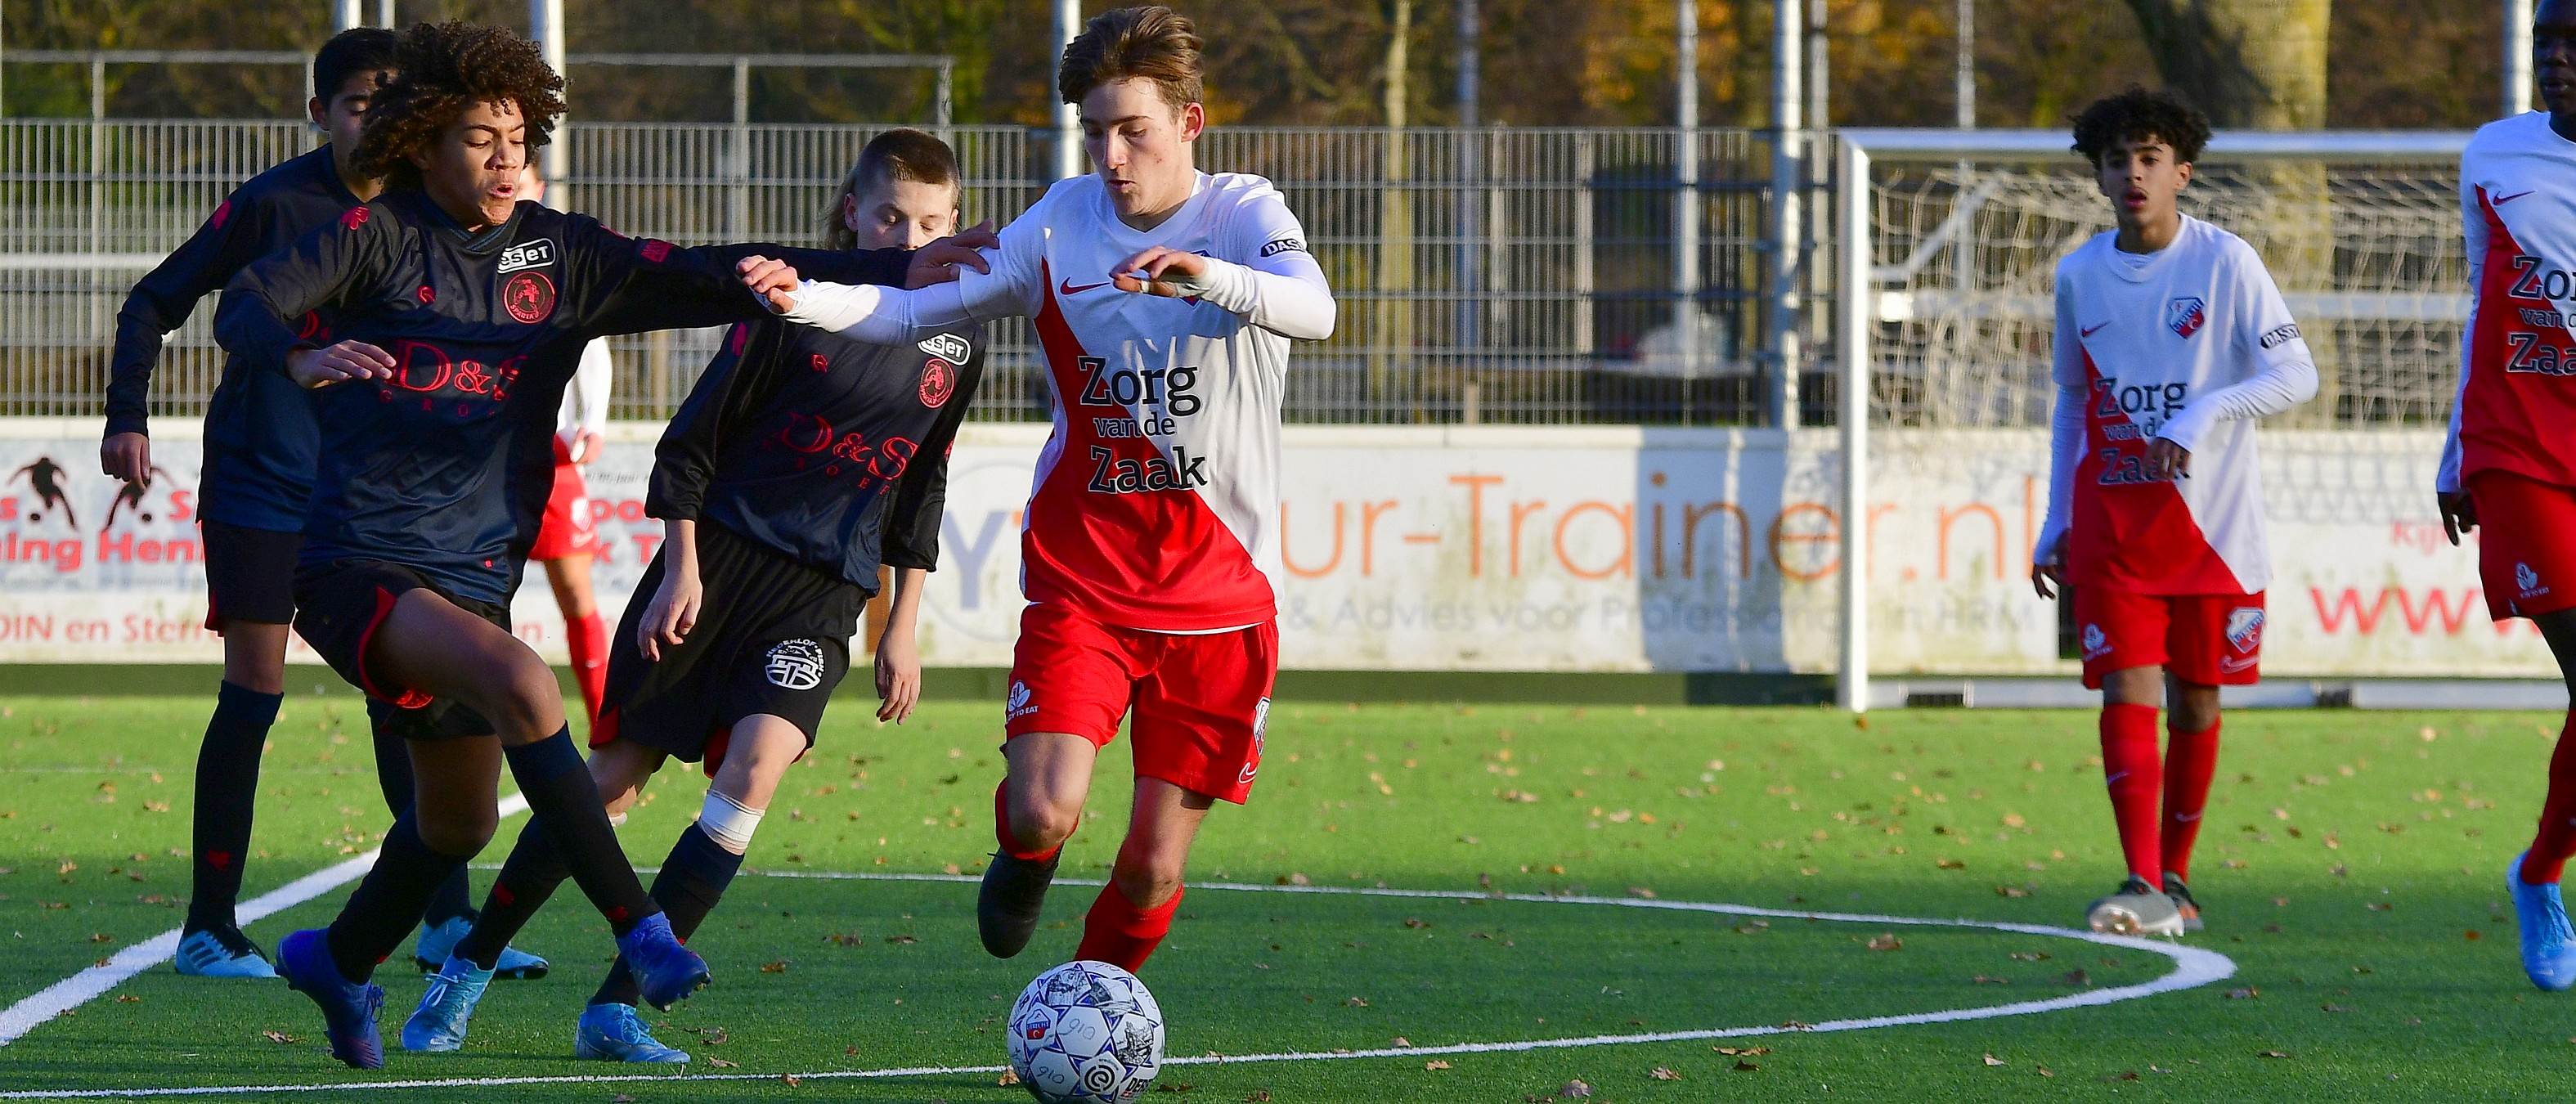 Ruime zege FC Utrecht O16 zorgt voor plaatsing kampioenscompetitie